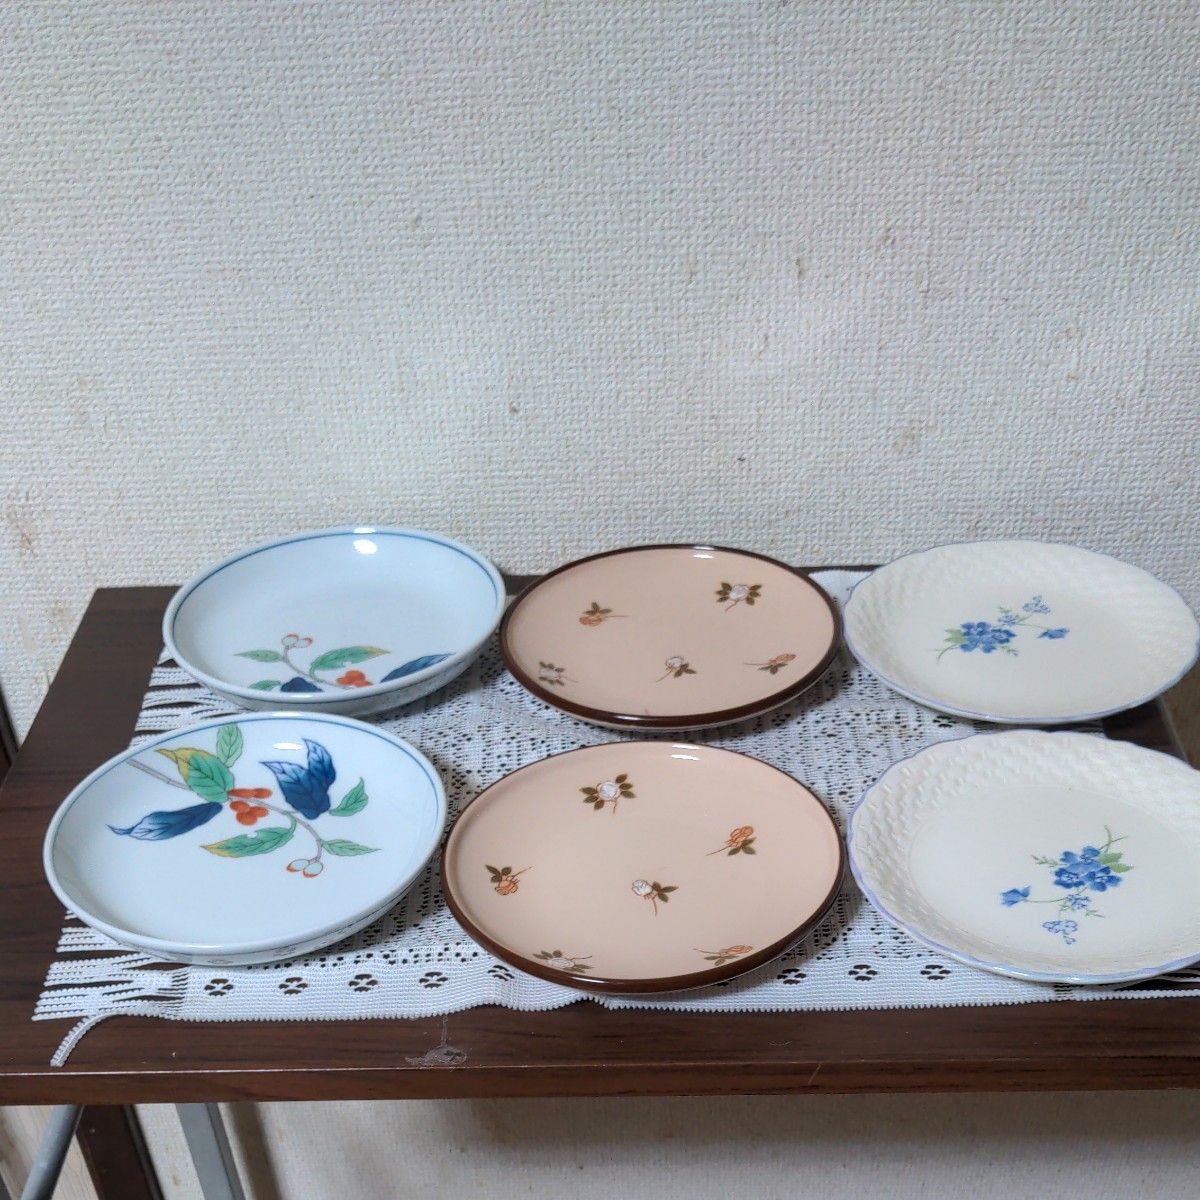 基泉・三和陶苑 小皿食器   銘々皿 きれいな小皿３種 ペアで6枚組   和皿と編み模様に青絵、肌色に小バラ散らしの３種 未使用品